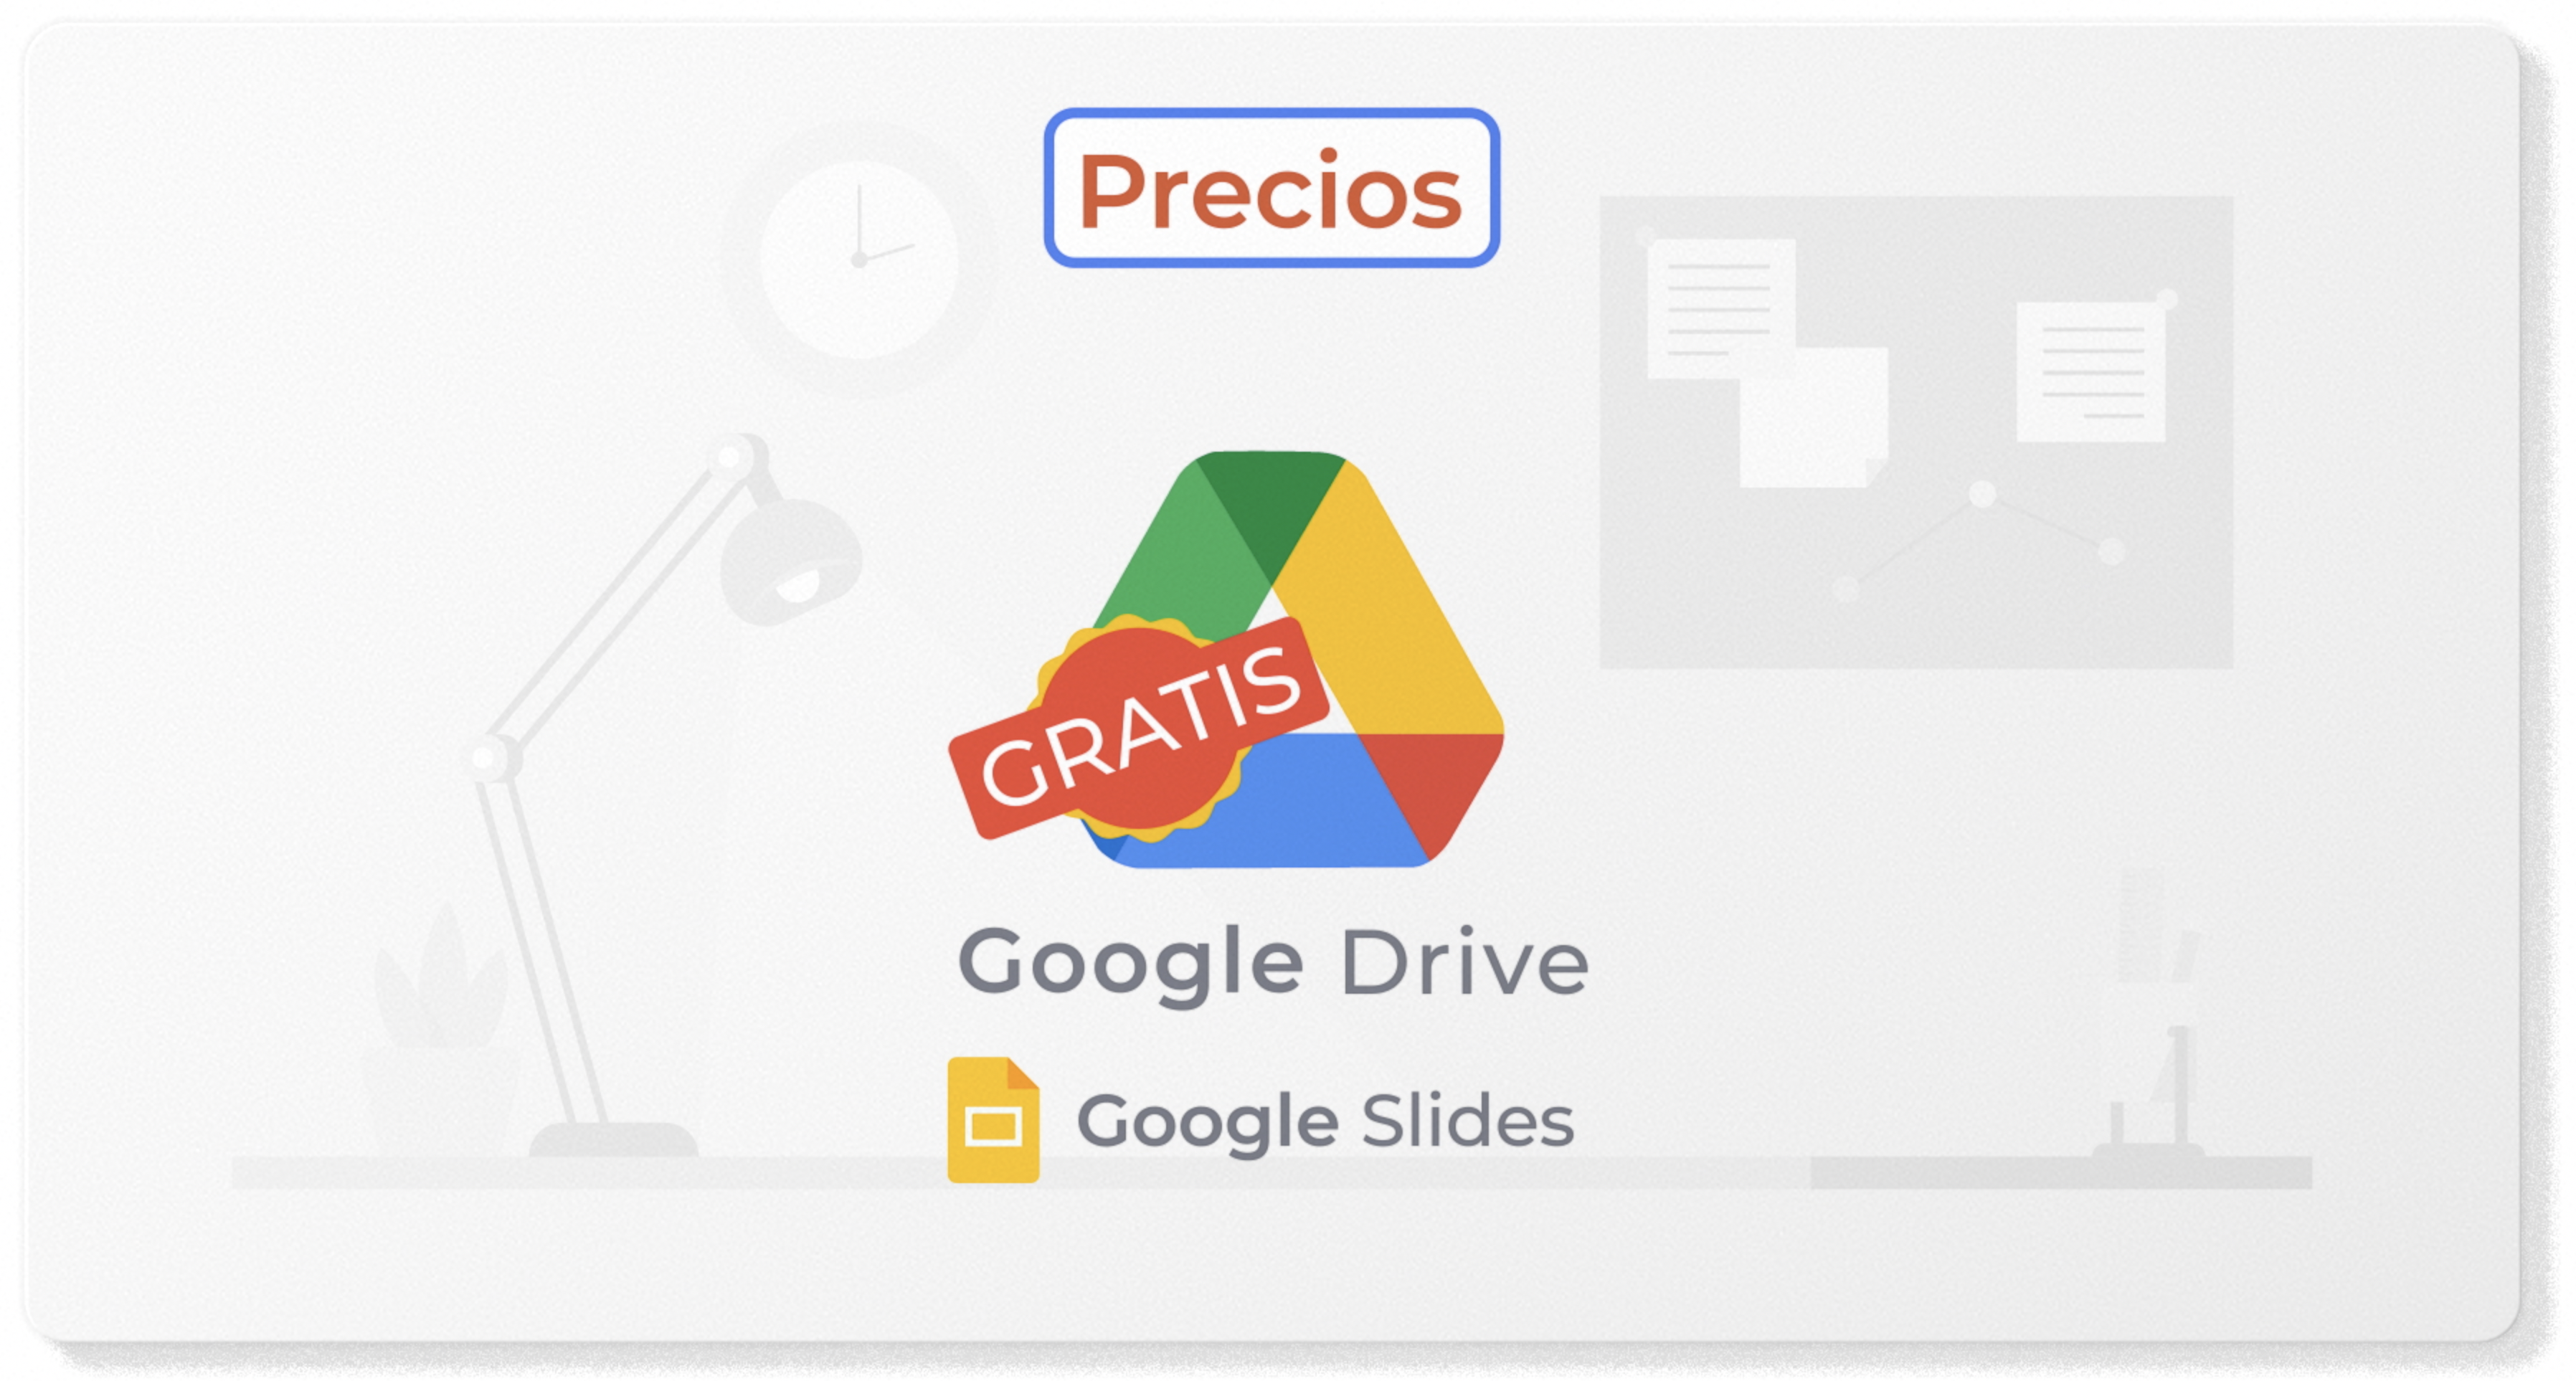 Google Slides forma parte de Google Drive y por lo tanto, es gratuita y puede ser usada por cualquier persona que tenga una cuenta de Google.